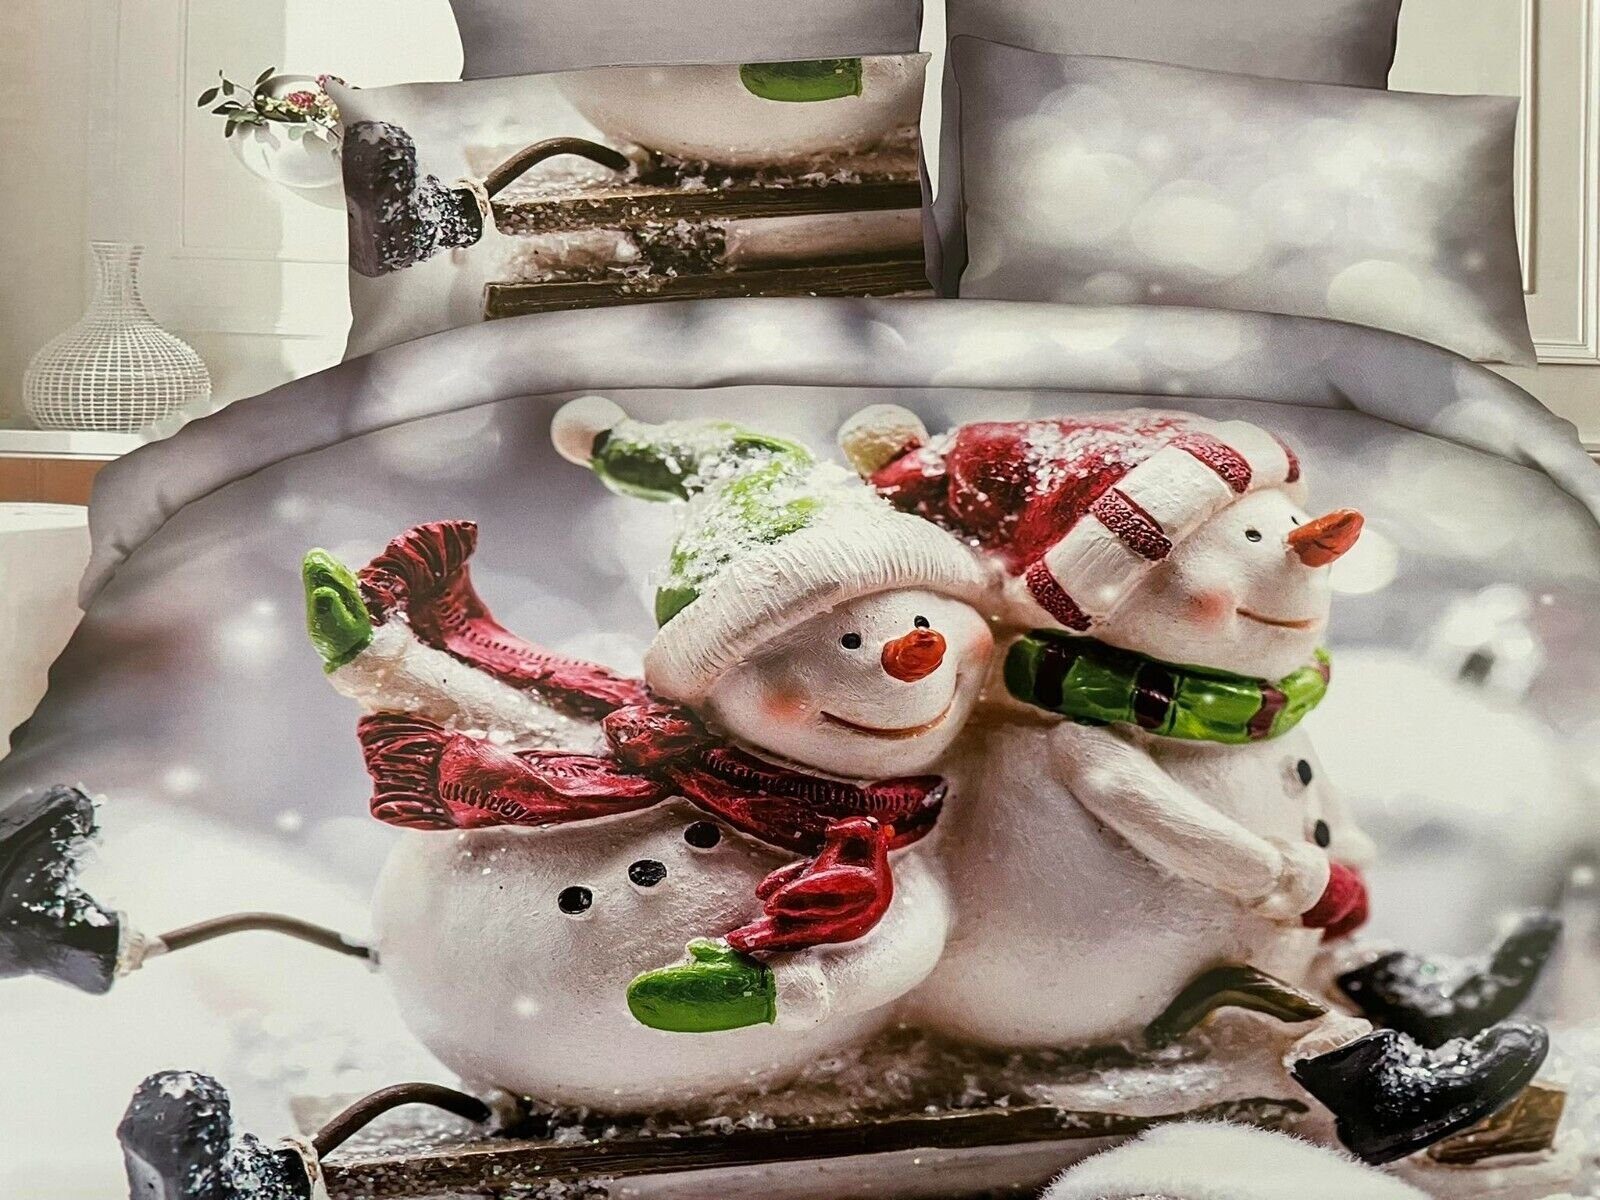 Bettwäsche Snowman, DH DEIN . HAUS, Bettwäschegarnitur, Baumwolle, Weihnachtsmotiv, Wintermotiv